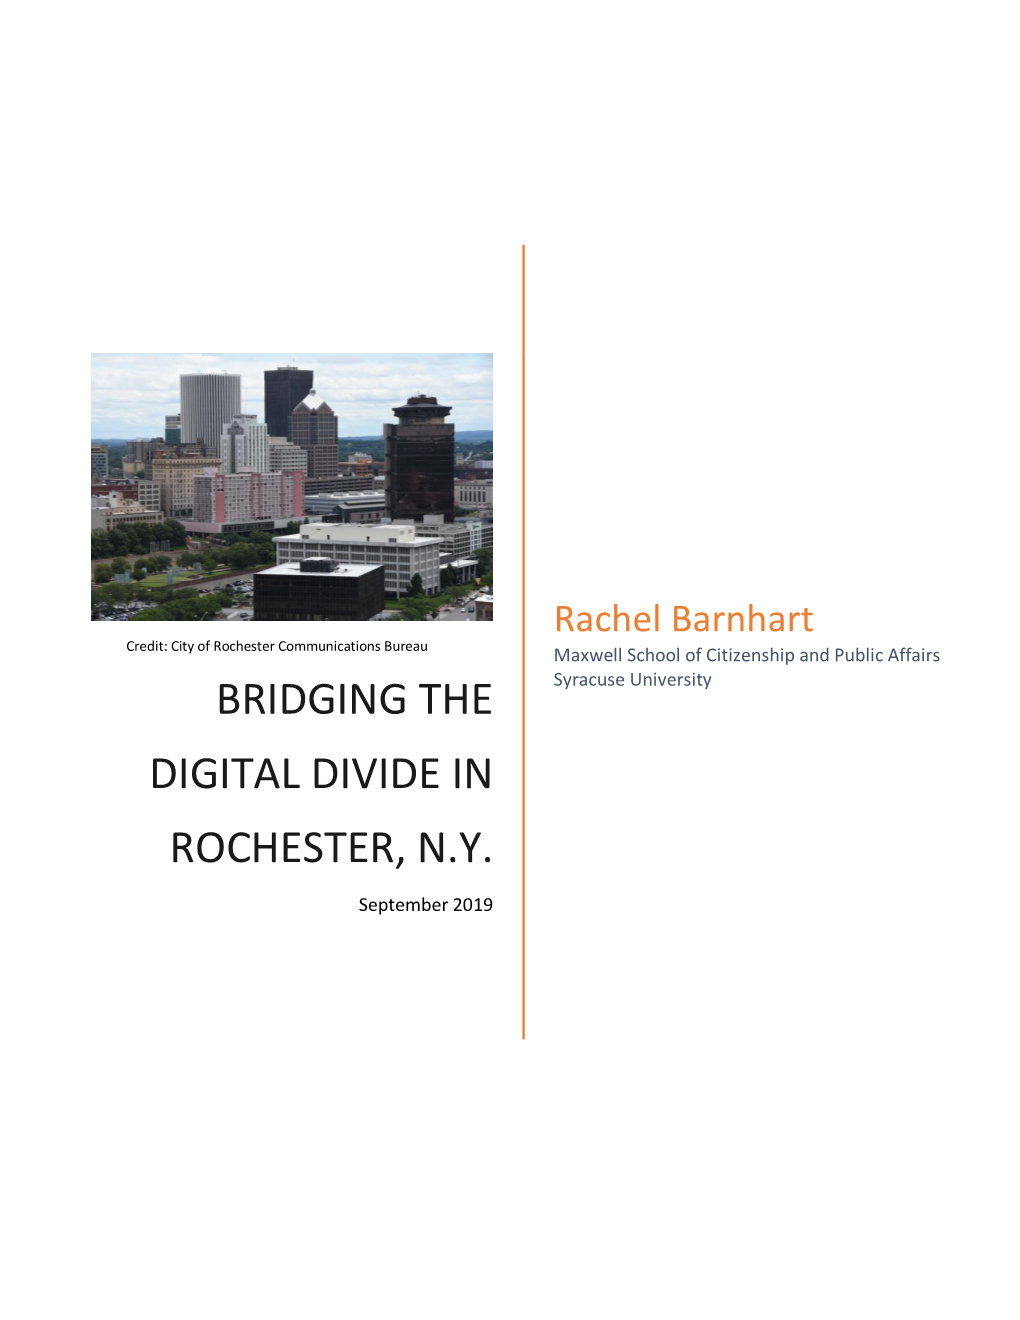 Bridging the Digital Divide in Rochester, N.Y